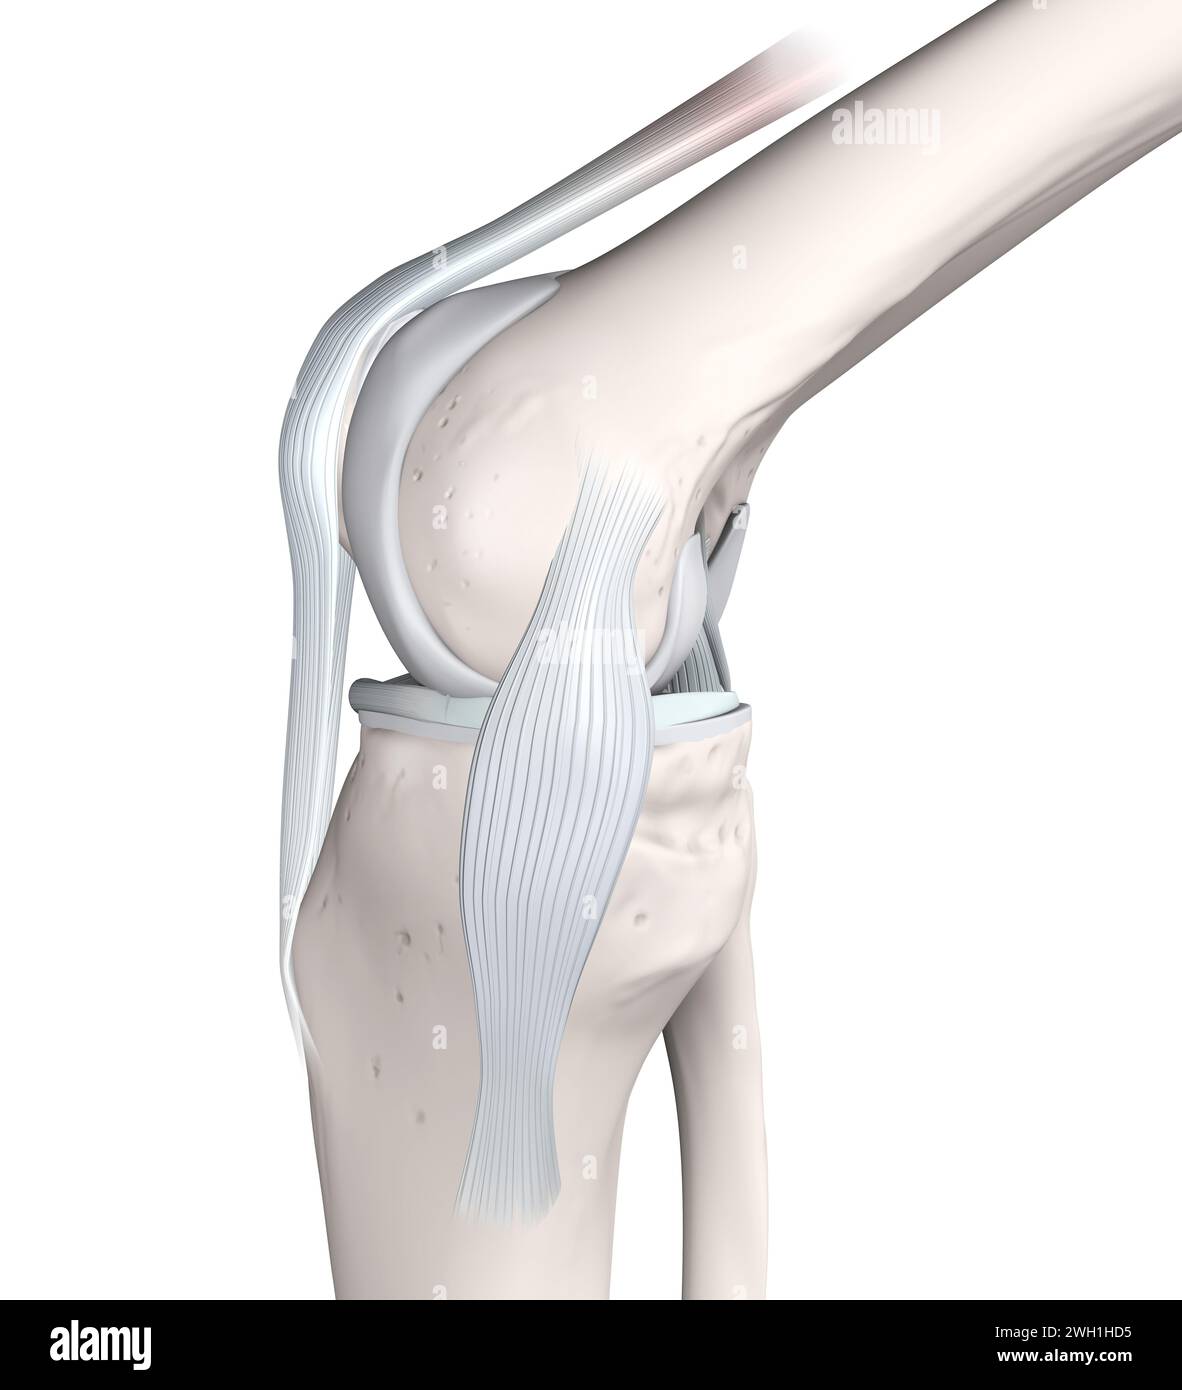 Anatomia articolare del ginocchio. Ossa, menischi, cartilagine articolare e legamenti. Vista mediale. Illustrazione 3D. Foto Stock